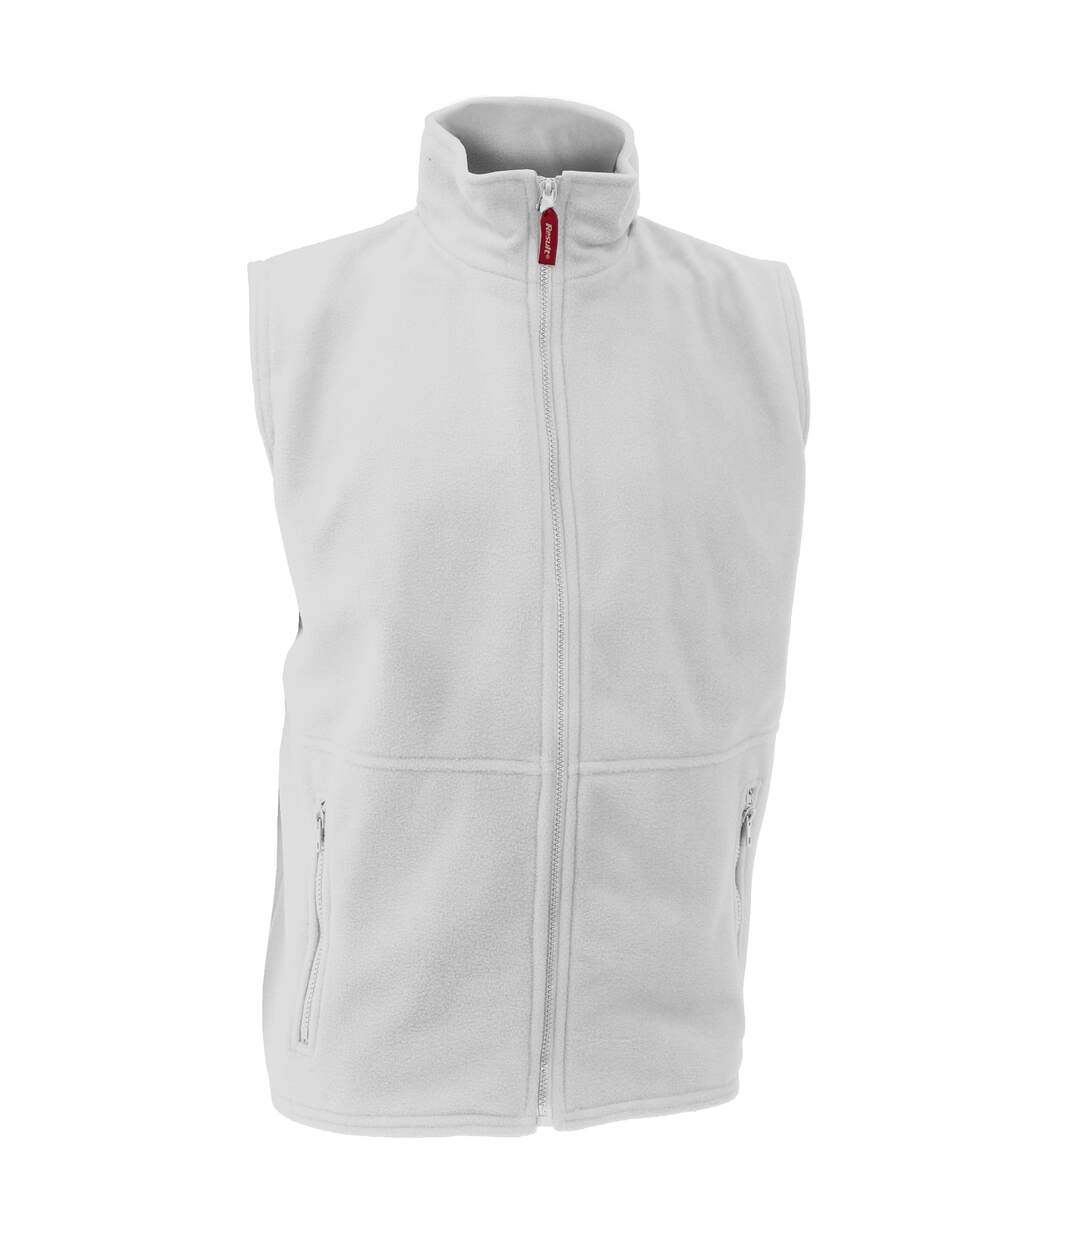 Result Mens Active Anti Pilling Fleece Bodywarmer Jacket (White) - UTBC923